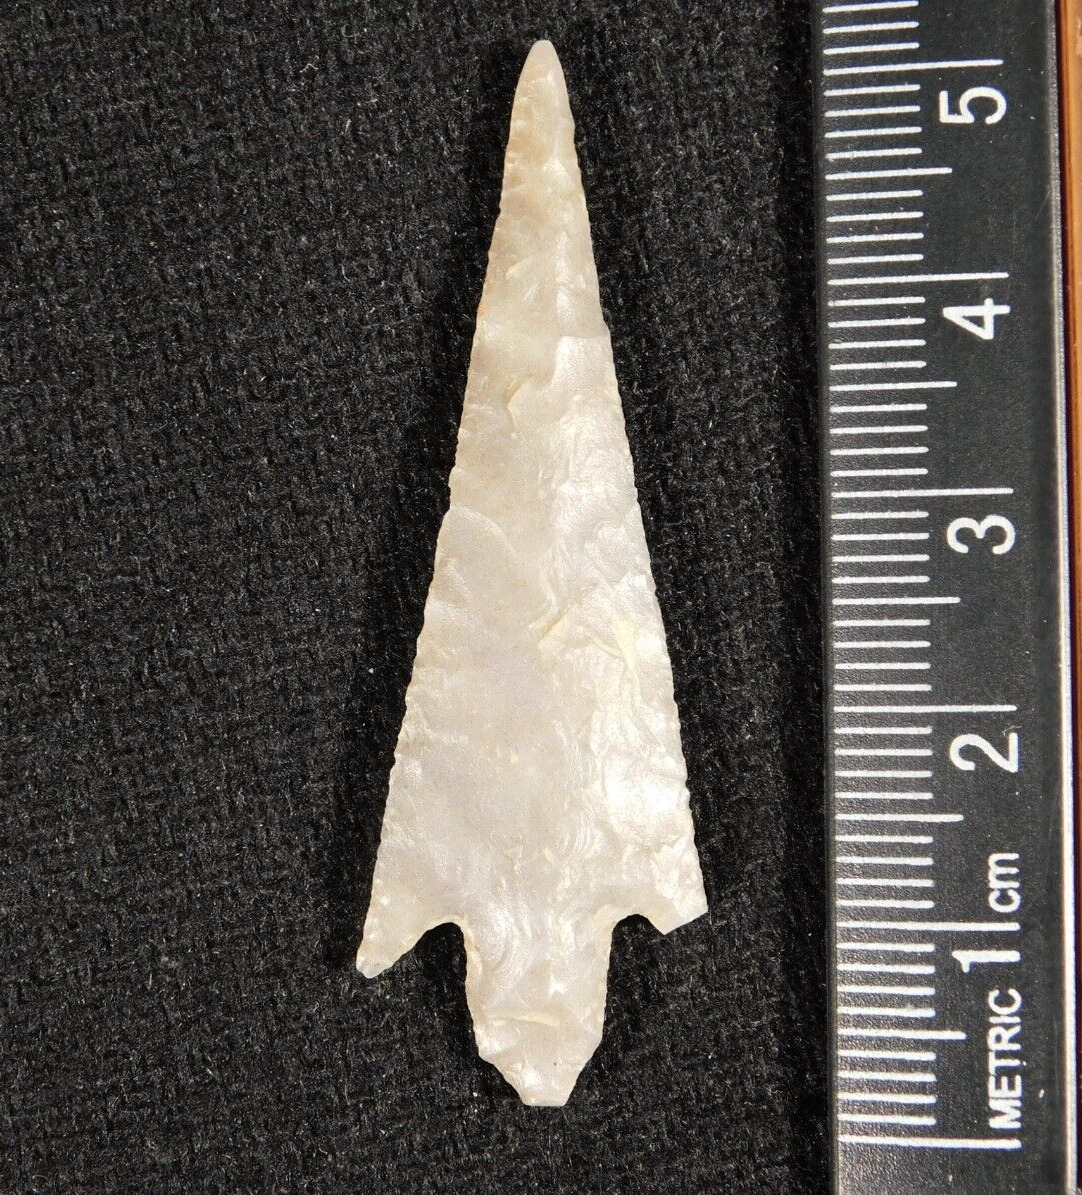 Ancient FLARED SHOULDER Stemmed Form Arrowhead or Flint Artifact Niger 2.52